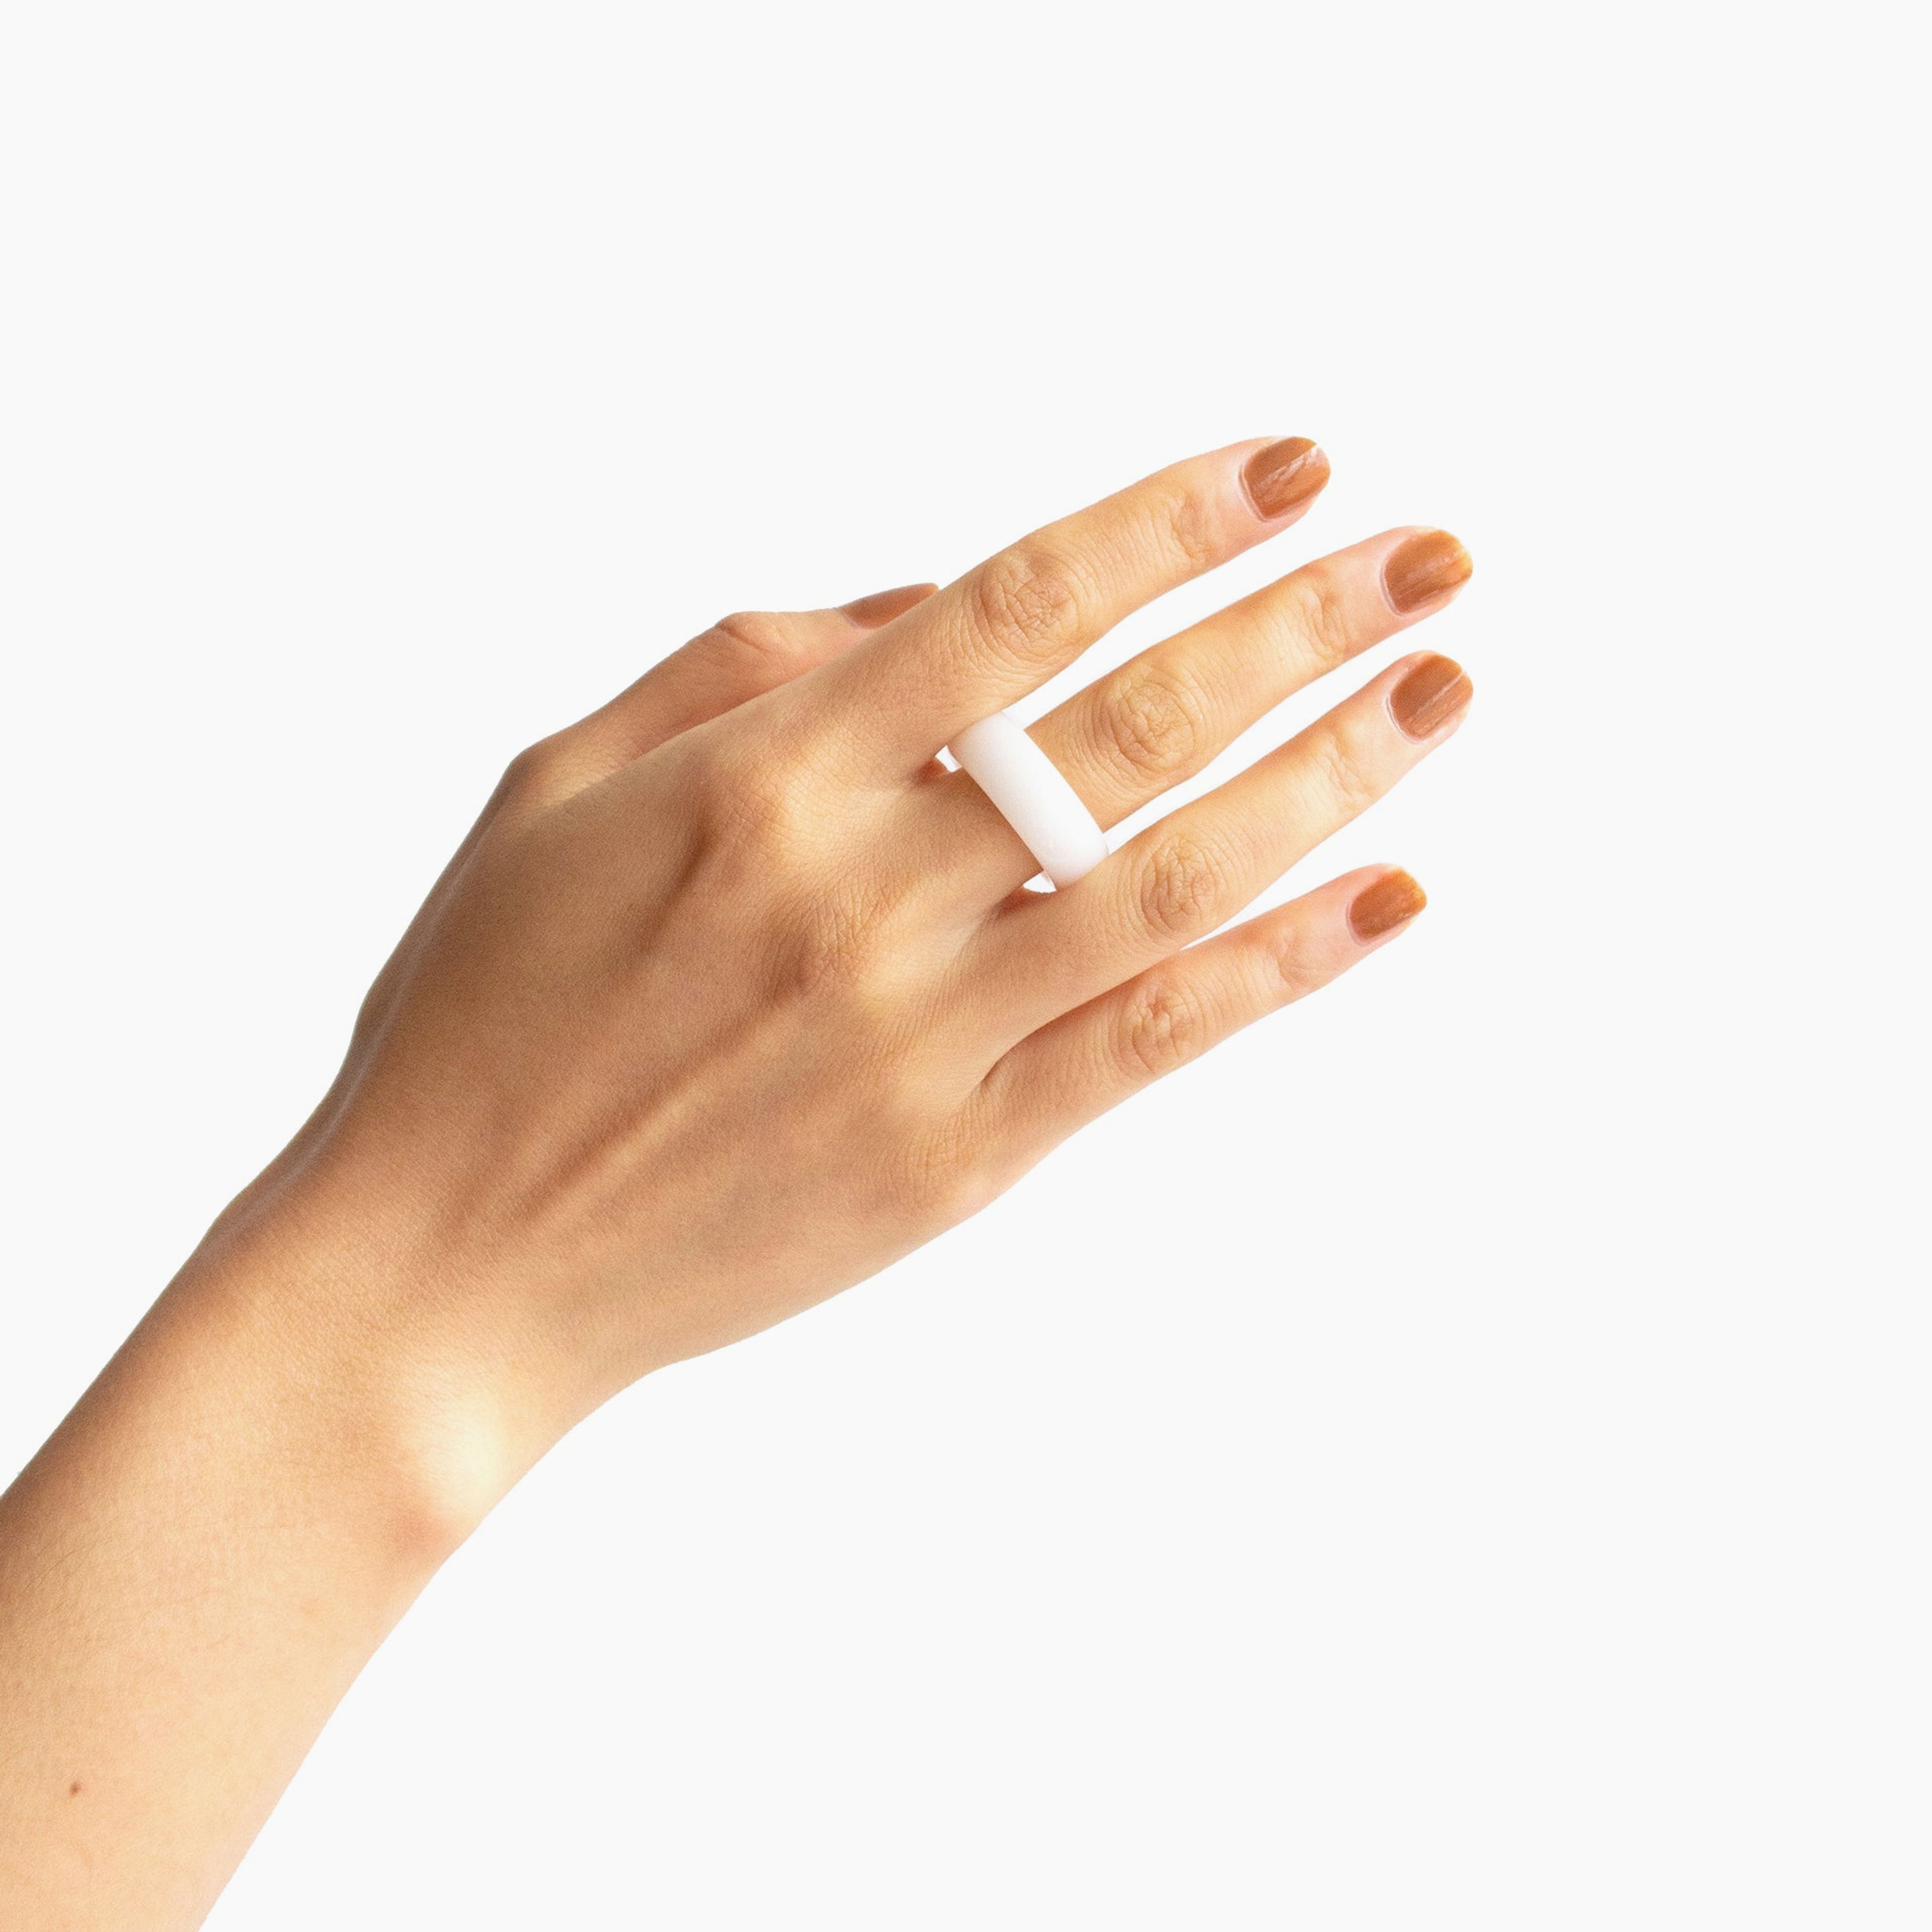 Tee — White jade stone ring